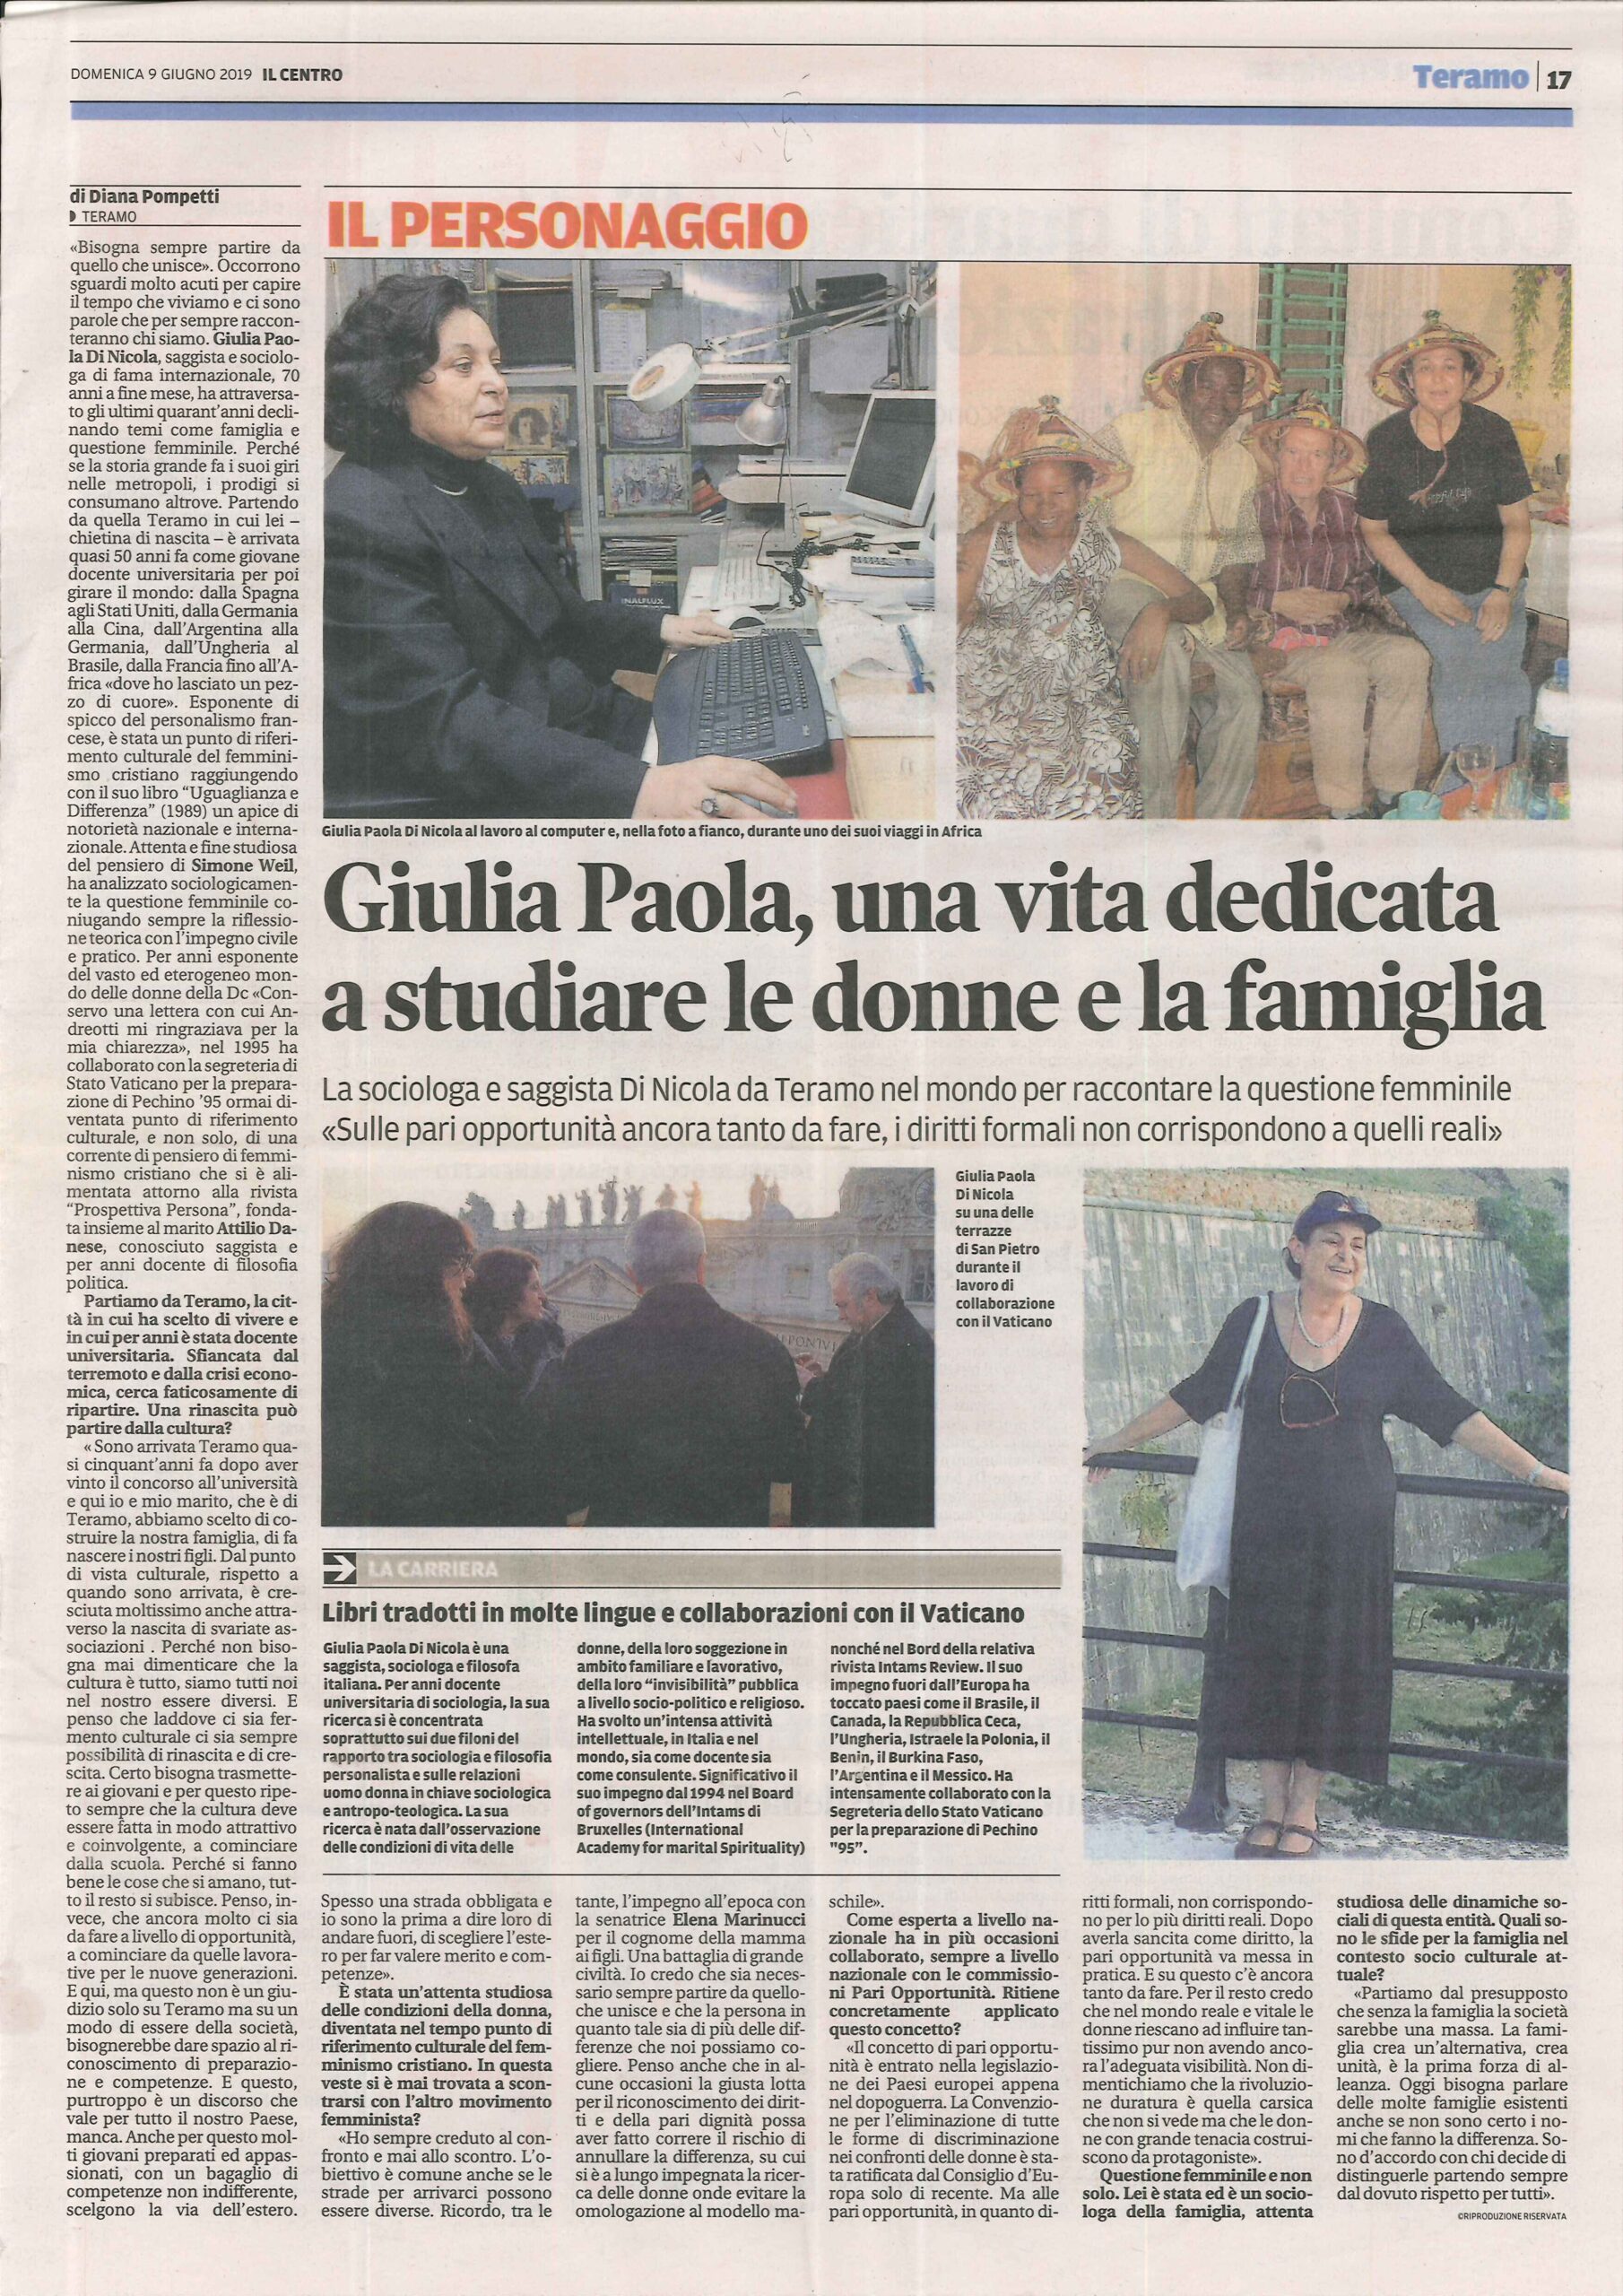 Giulia Paola, una vita dedicata a studiare le donne - articolde de Il Centro